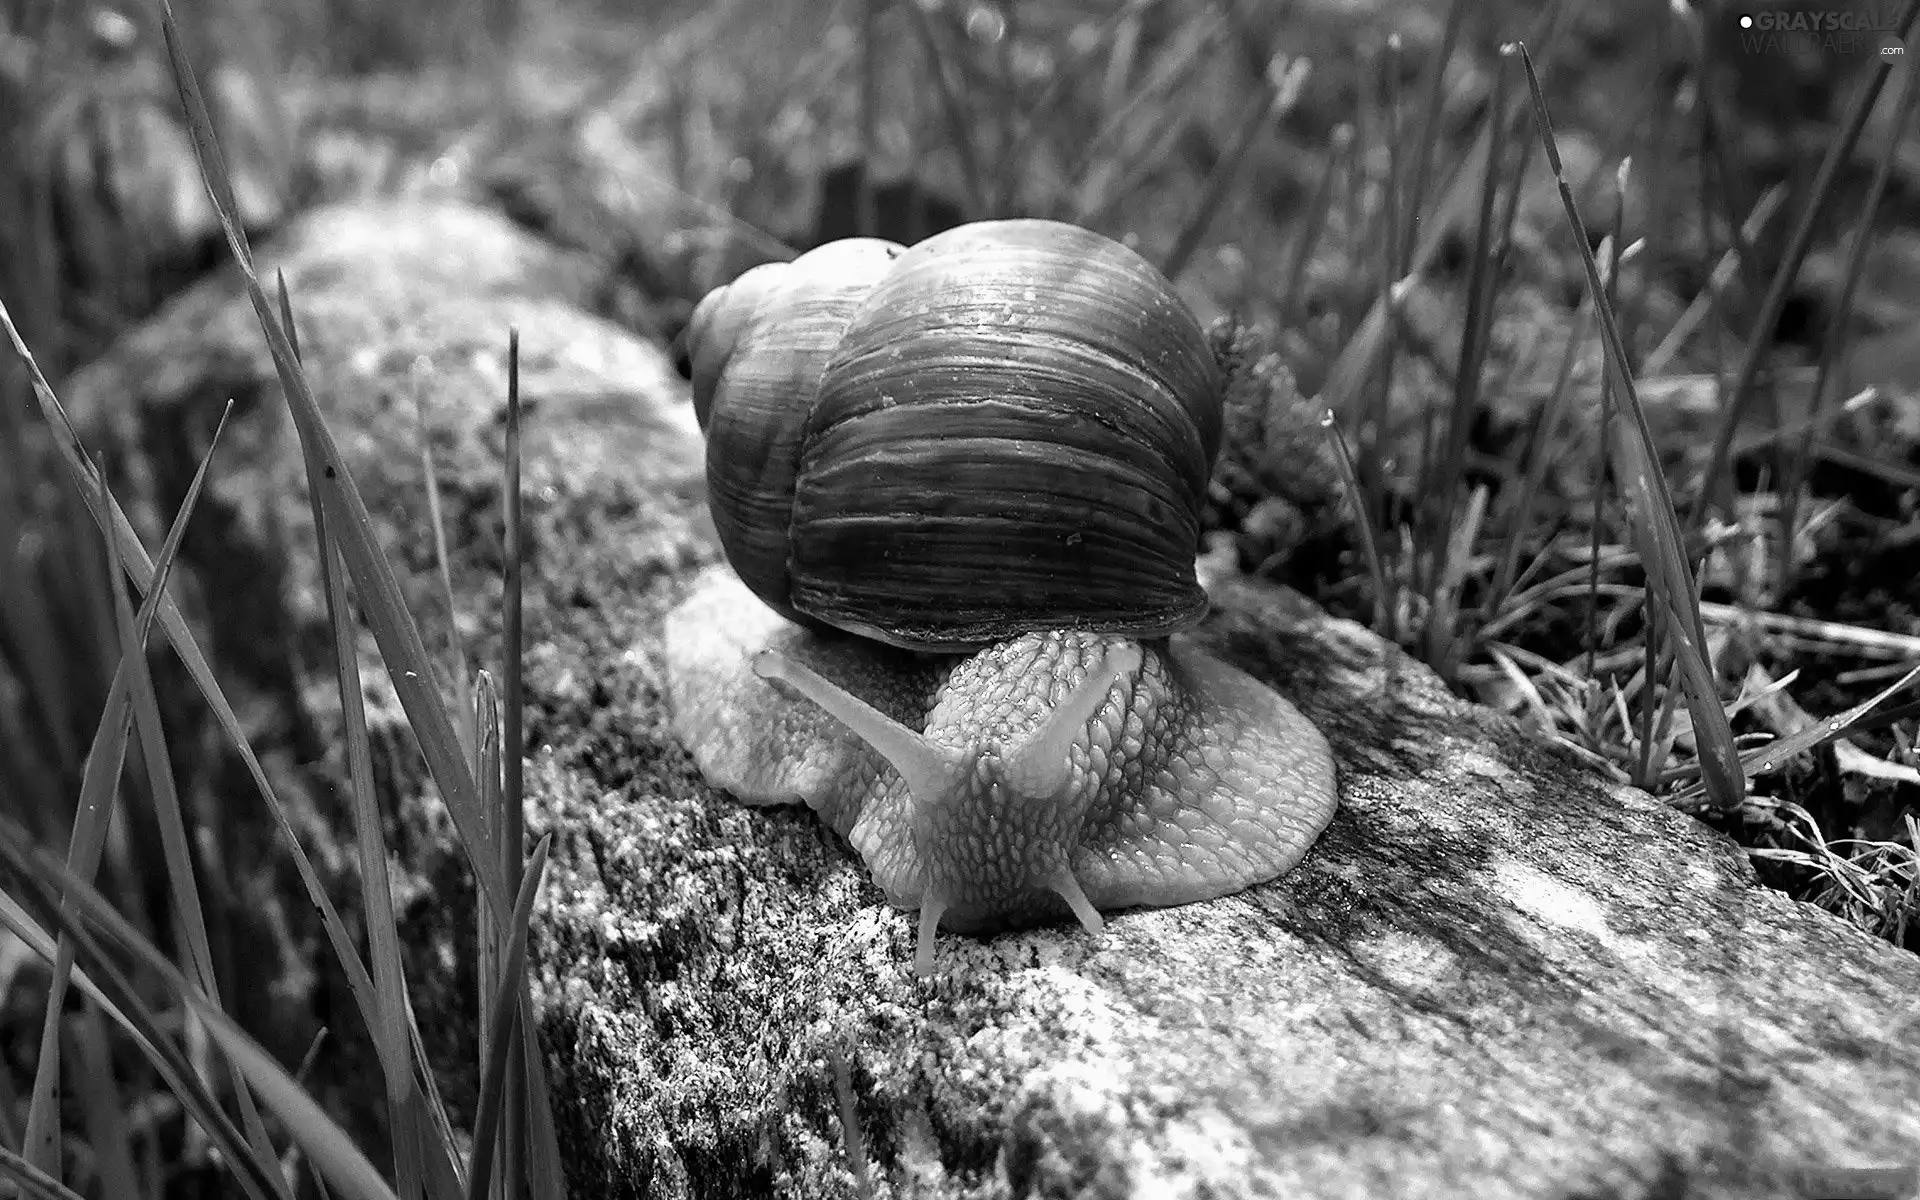 snail, winniczek